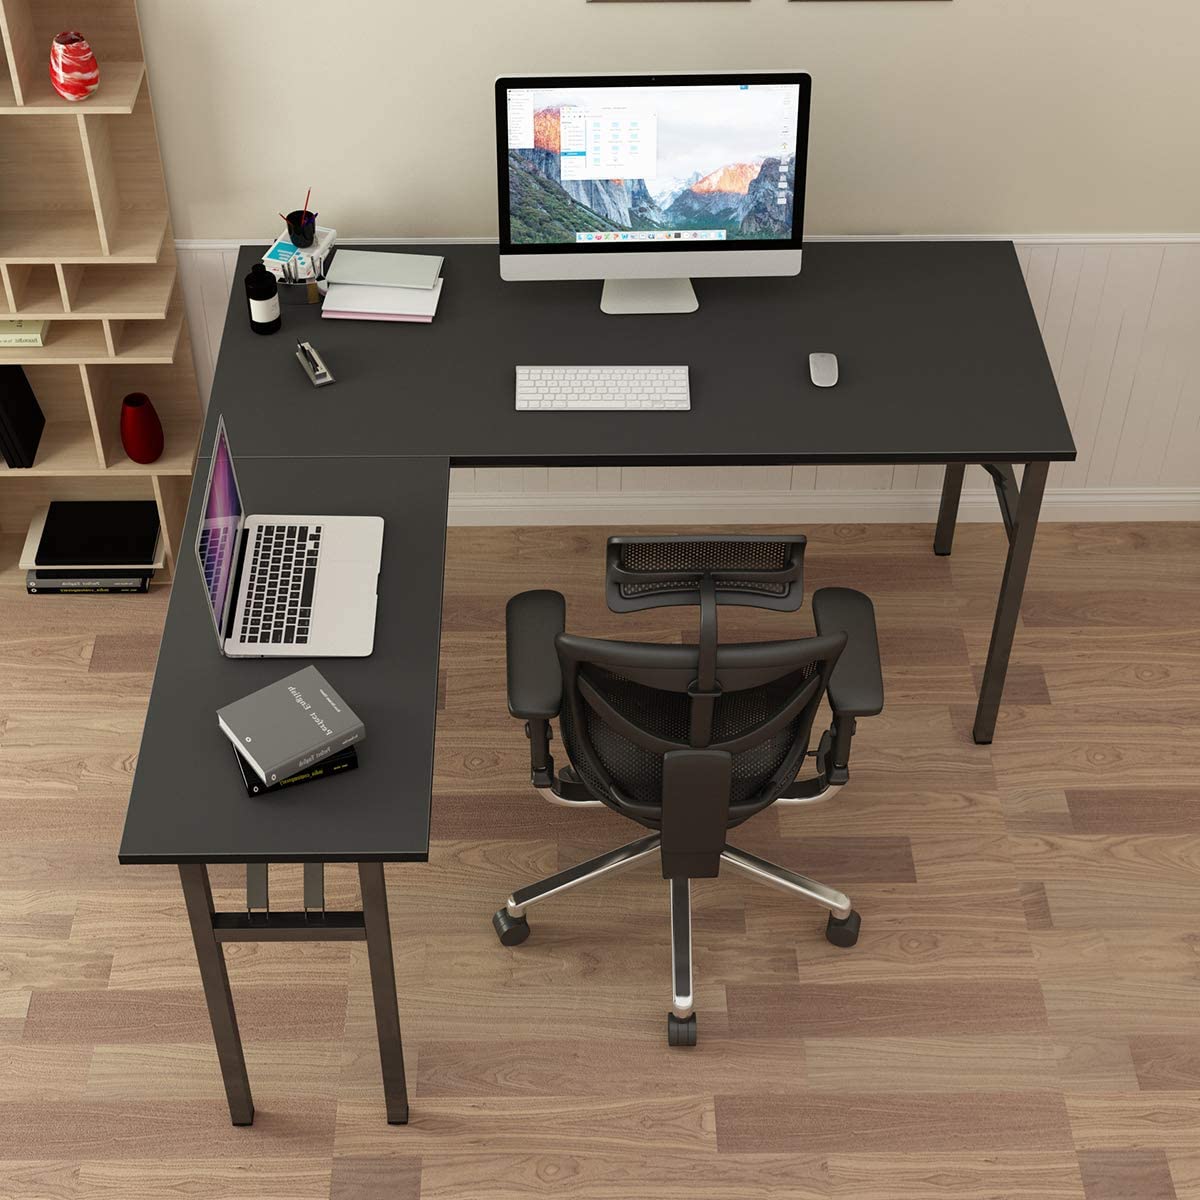 SogesPower 55" L Shaped Folding Computer Desk, Large L Desk Home Office Desk Multifunctional Workstation- Black